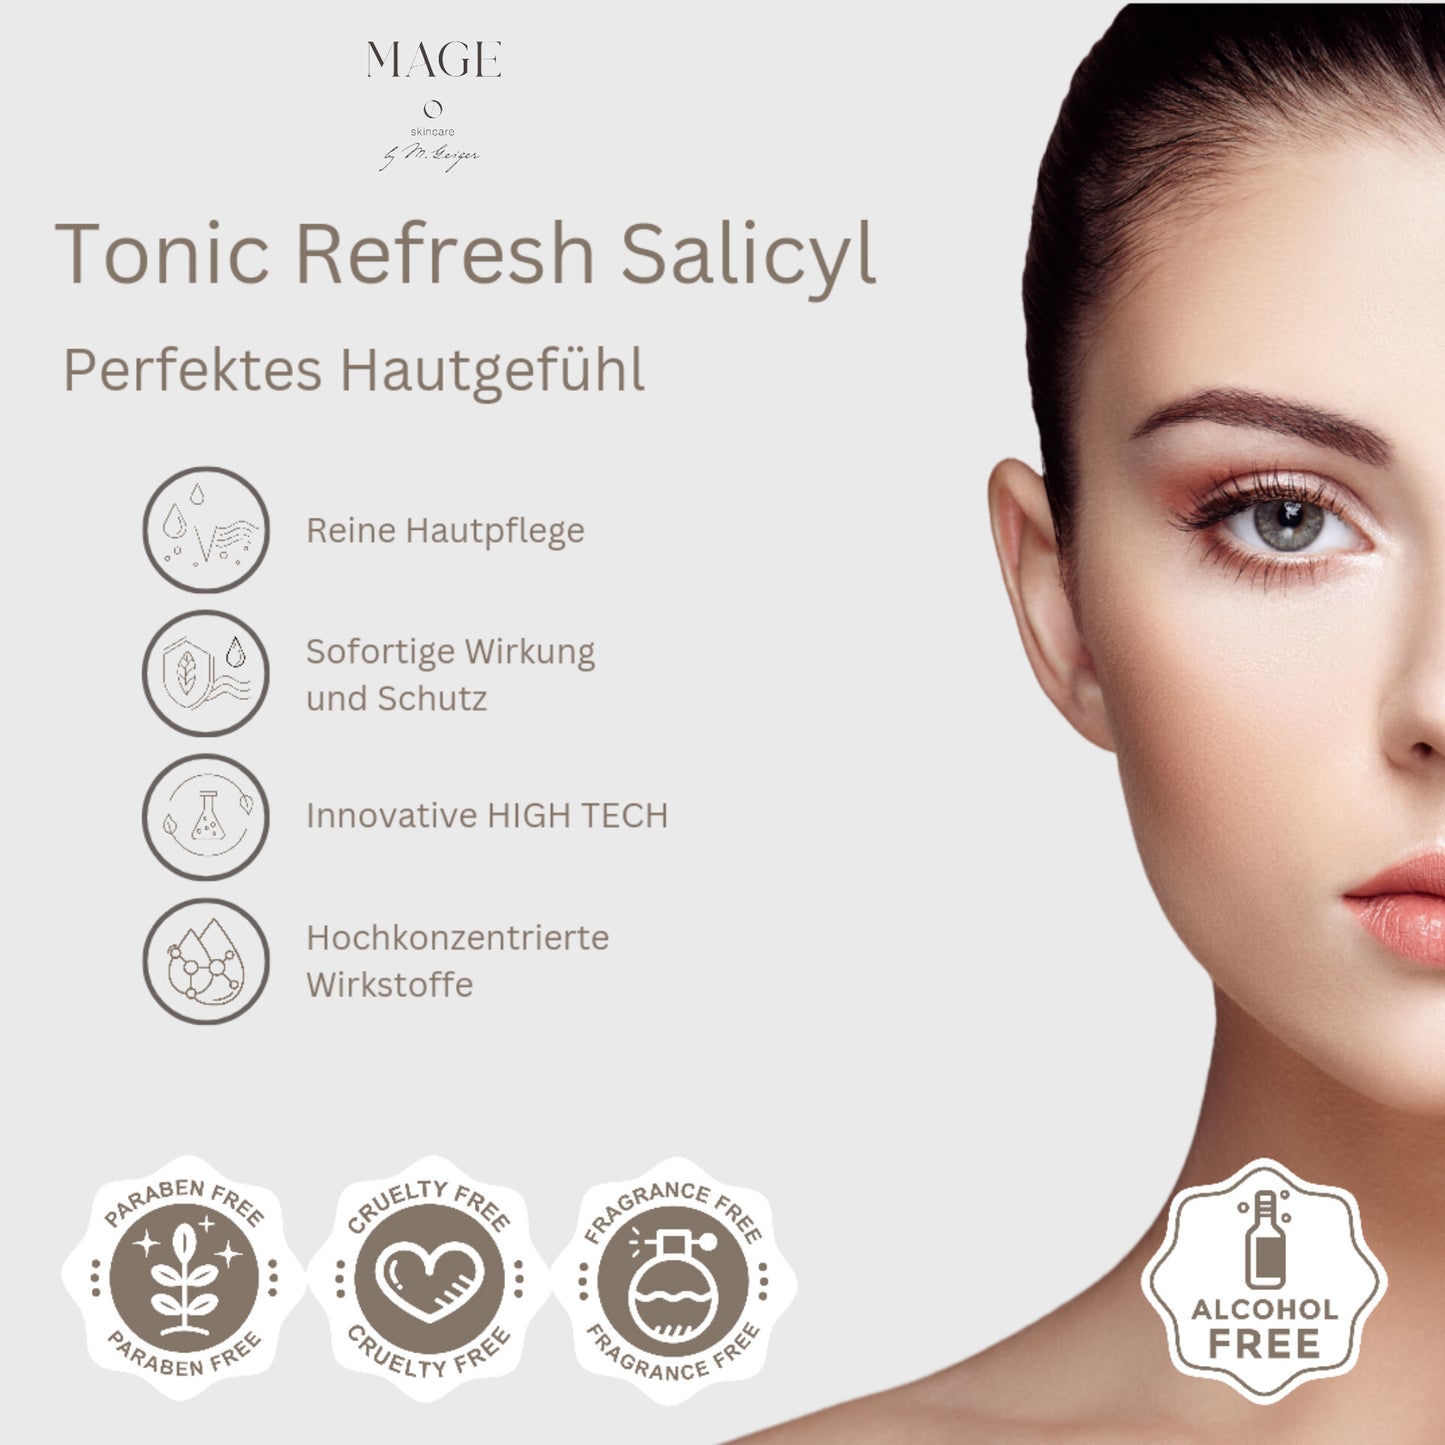 Tonic Refresh Salicyl peelt und erfrischt die Haut wirkt gegen Entzündungen und Alterung